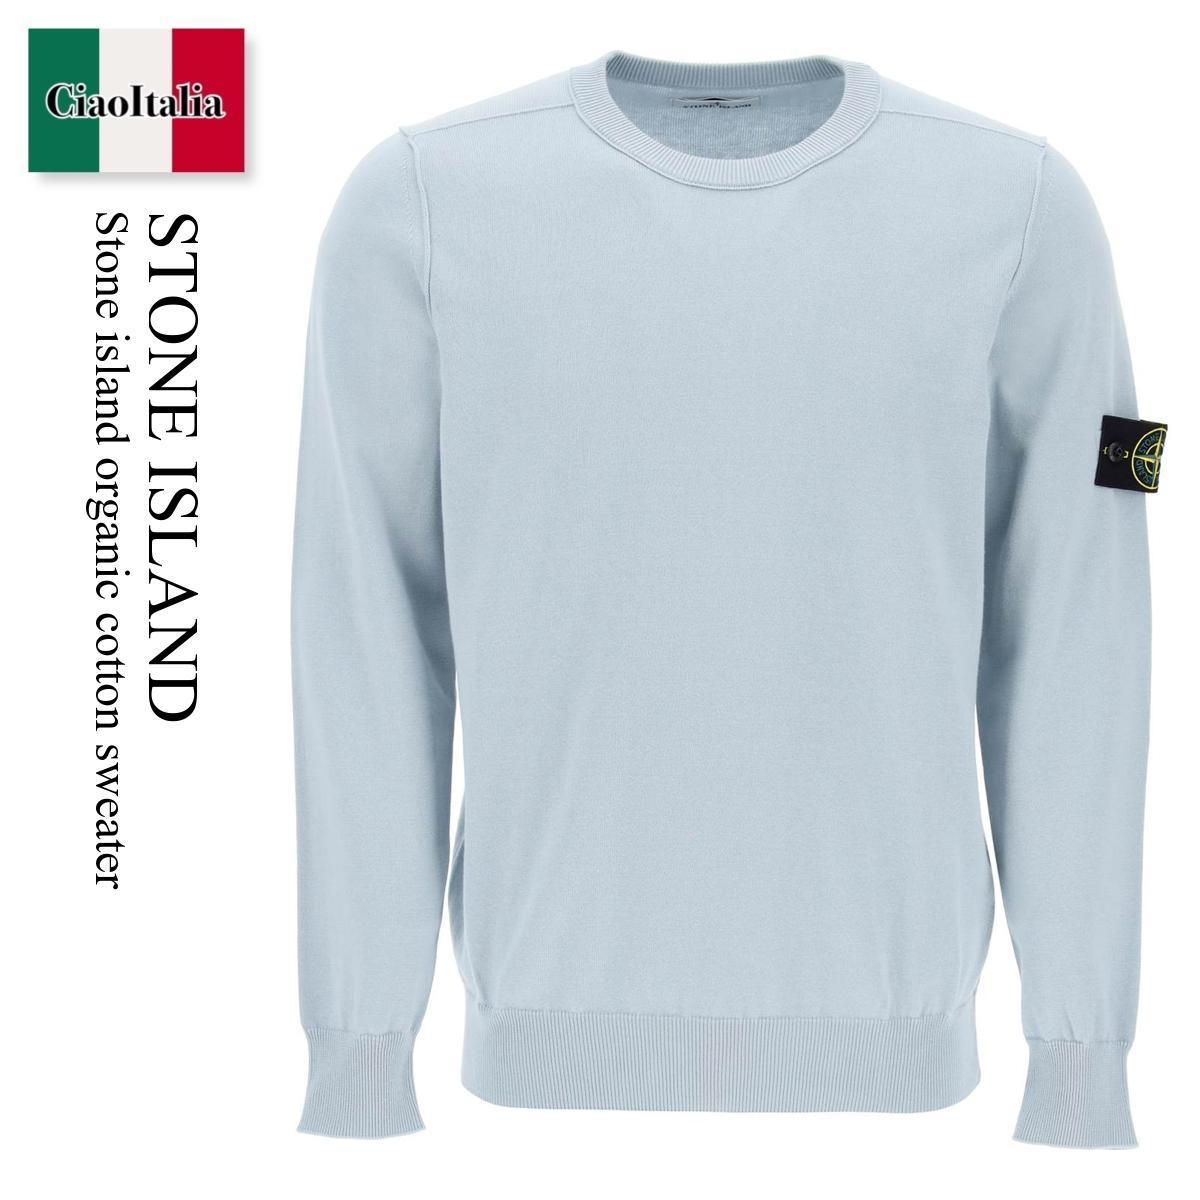 ストーンアイランド / Stone Island Organic Cotton Sweater / 8015540B2 / 8015540B2 V0041 / 8015540B2V0041 / ニット・セーター / 「正規品補償」「VIP価格販売」「お買い物サポート」